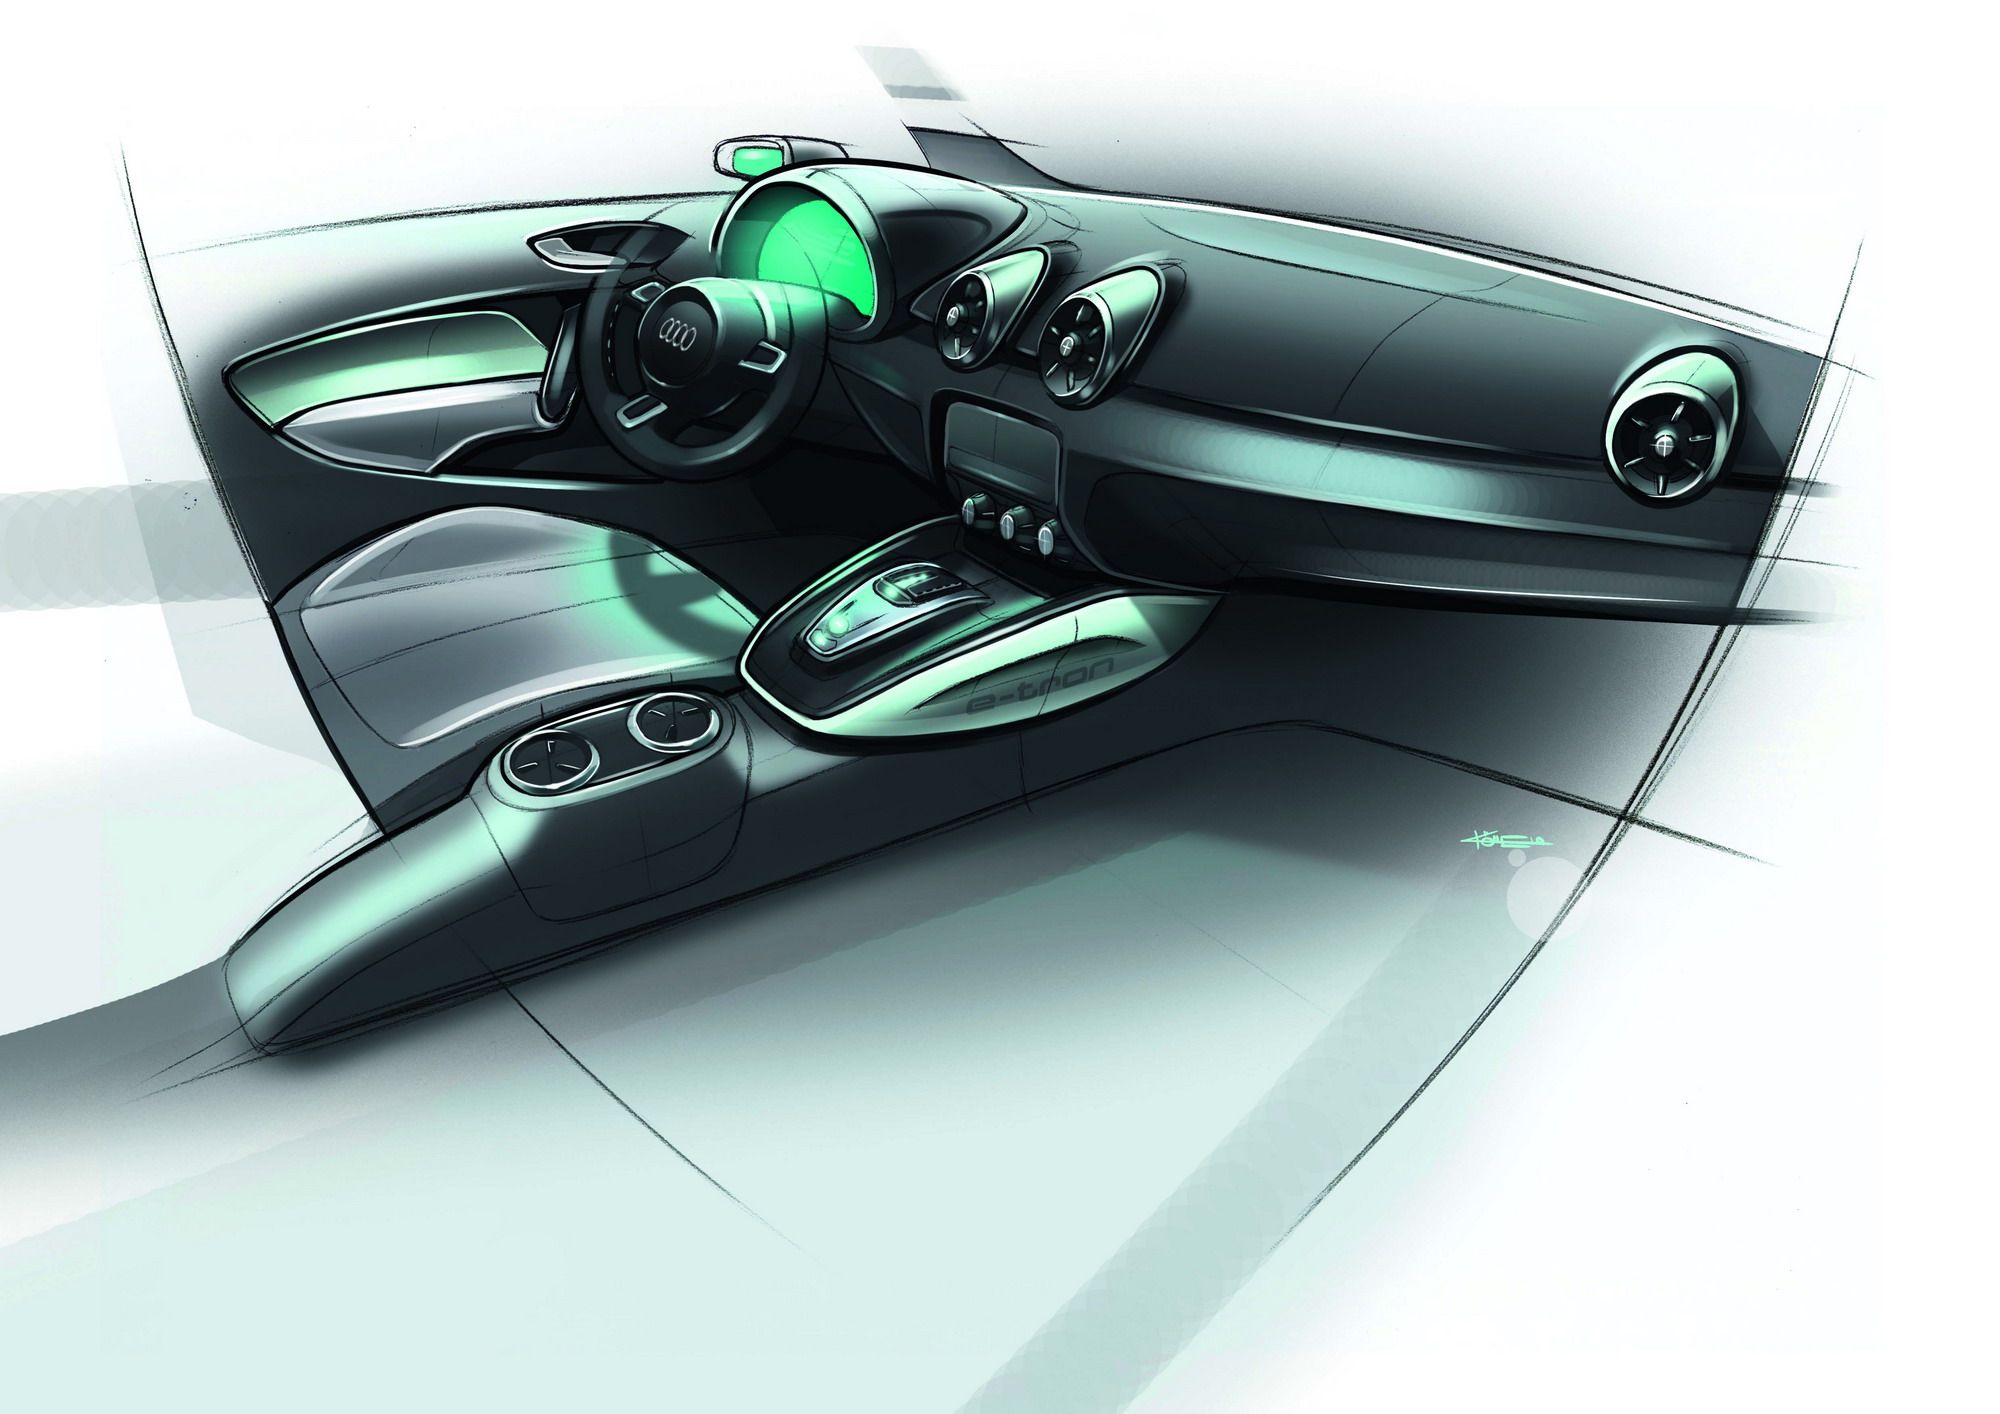 2010 Audi A1 e-tron Concept